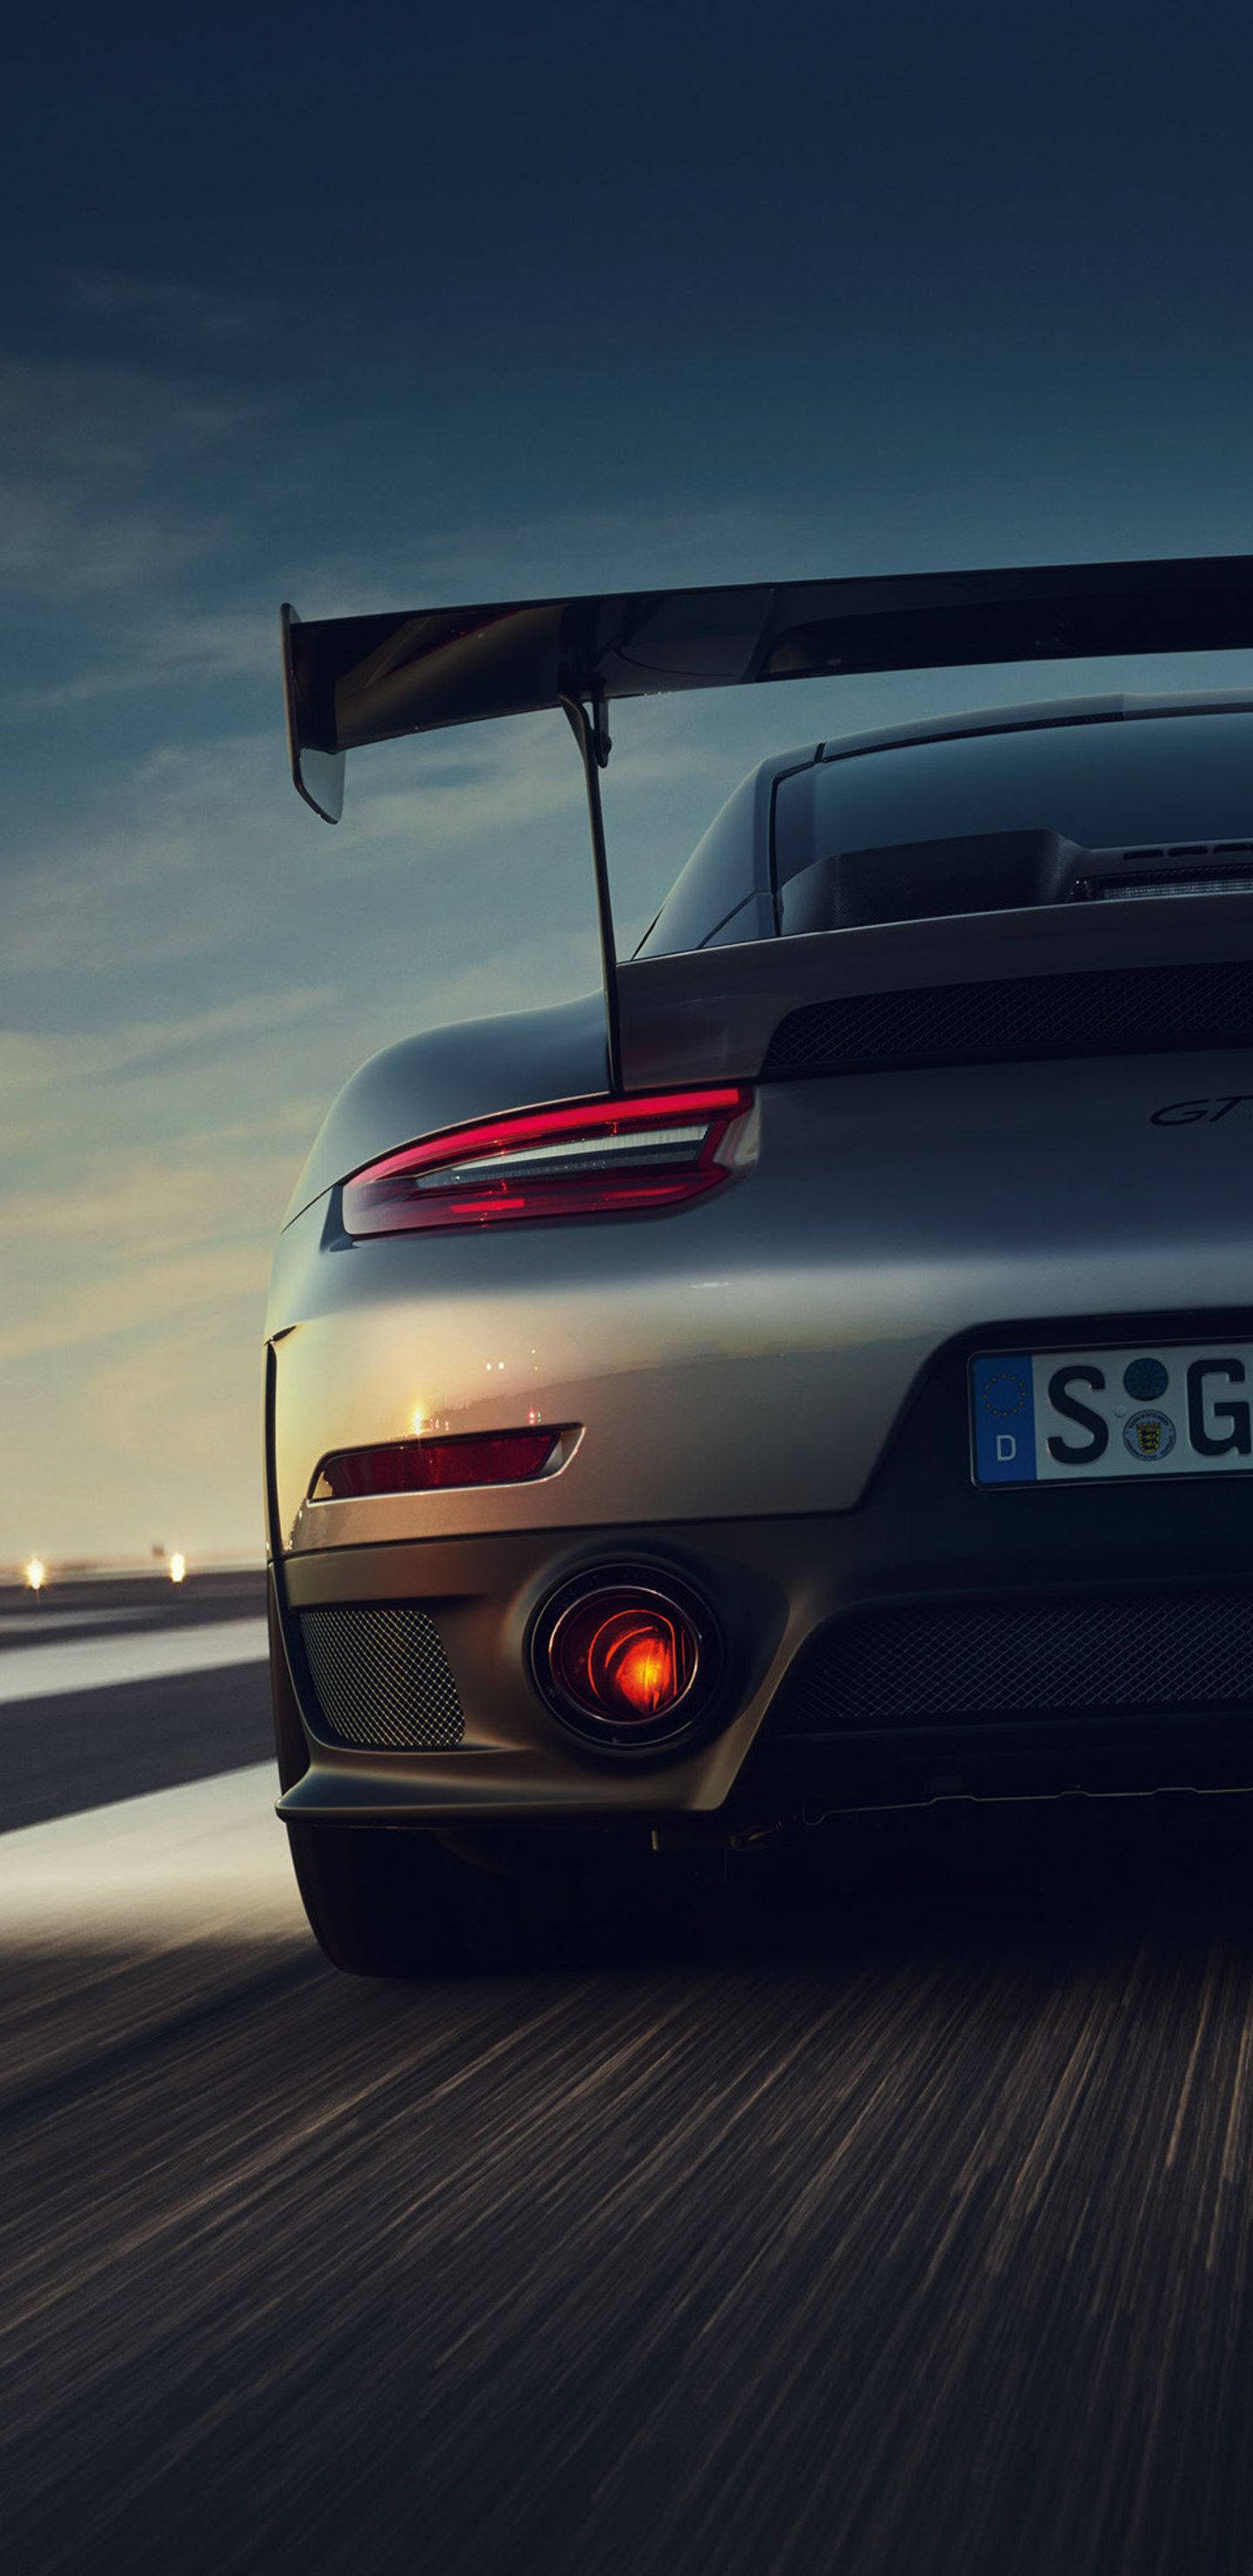 Hãy tải về nền cho iPhone với hình ảnh chiếc xe Porsche 911 GT2 như thể bạn đang sở hữu nó. Với tầm nhìn rộng mở và kiểu dáng thể thao, chiếc xe này đáng được sử dụng làm hình nền cho điện thoại của bạn.